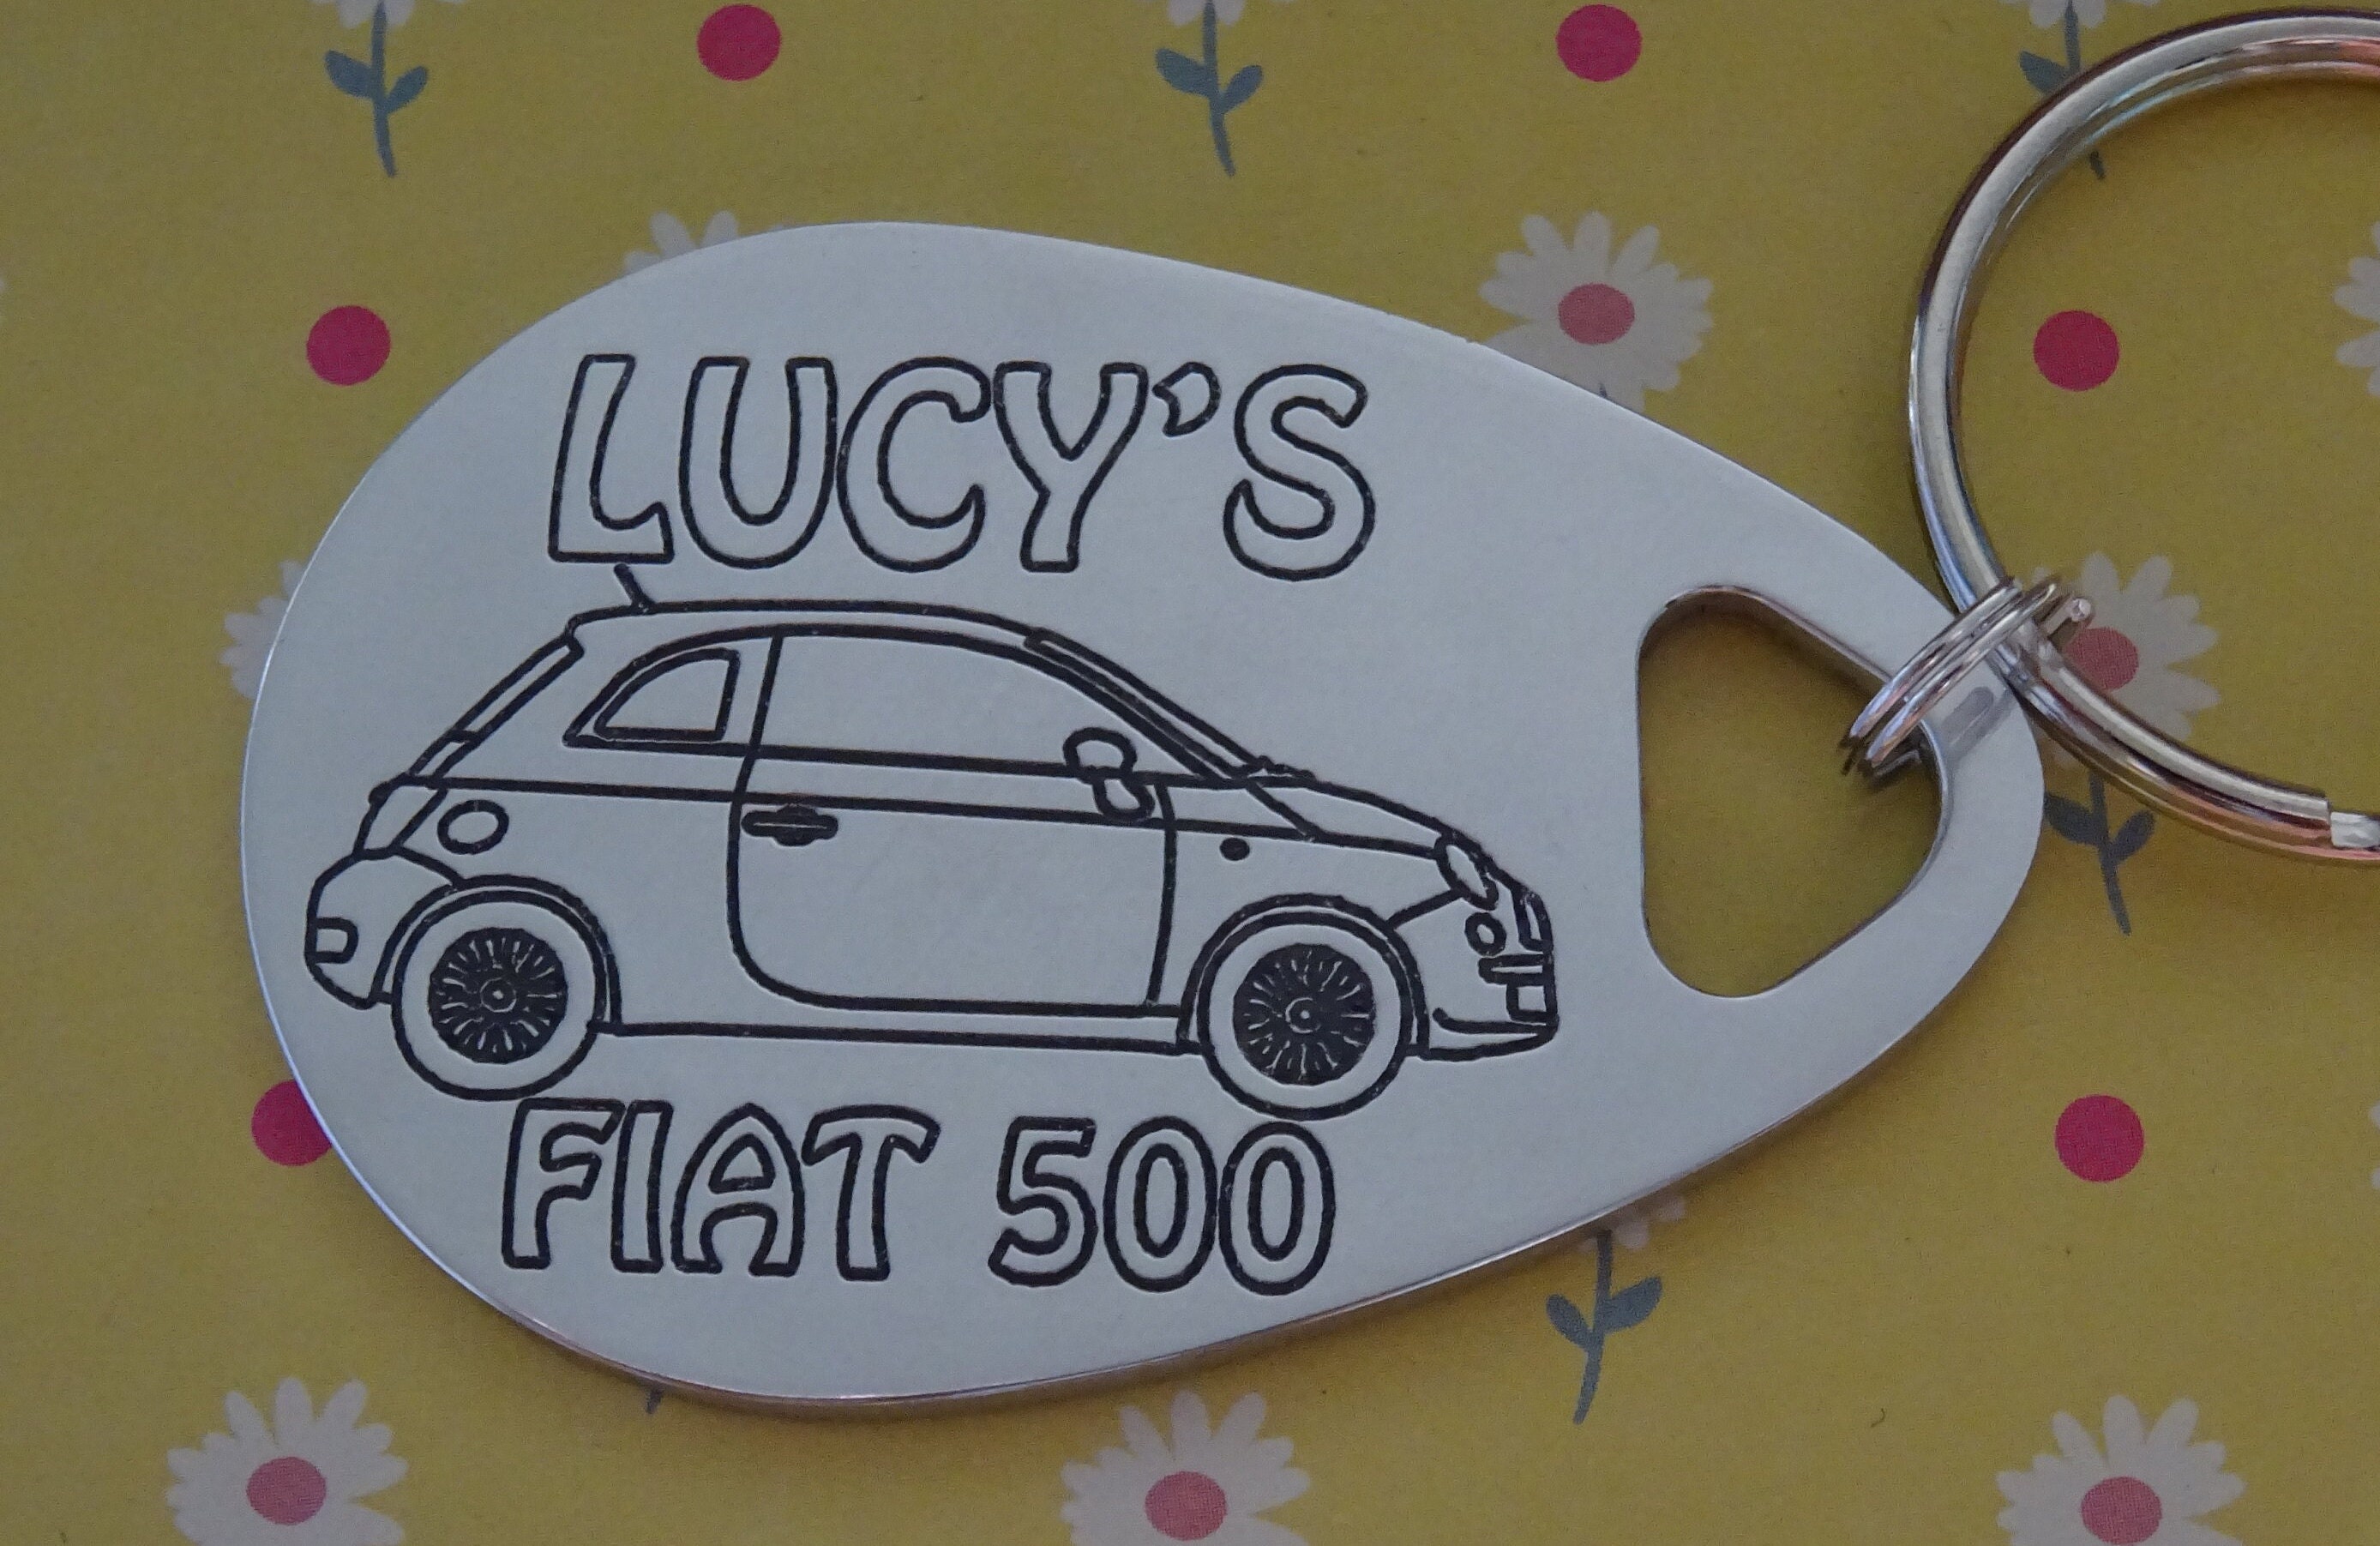 Fiat500 Key Covers on X: @Fiat500_Club fiat 500 handmade key